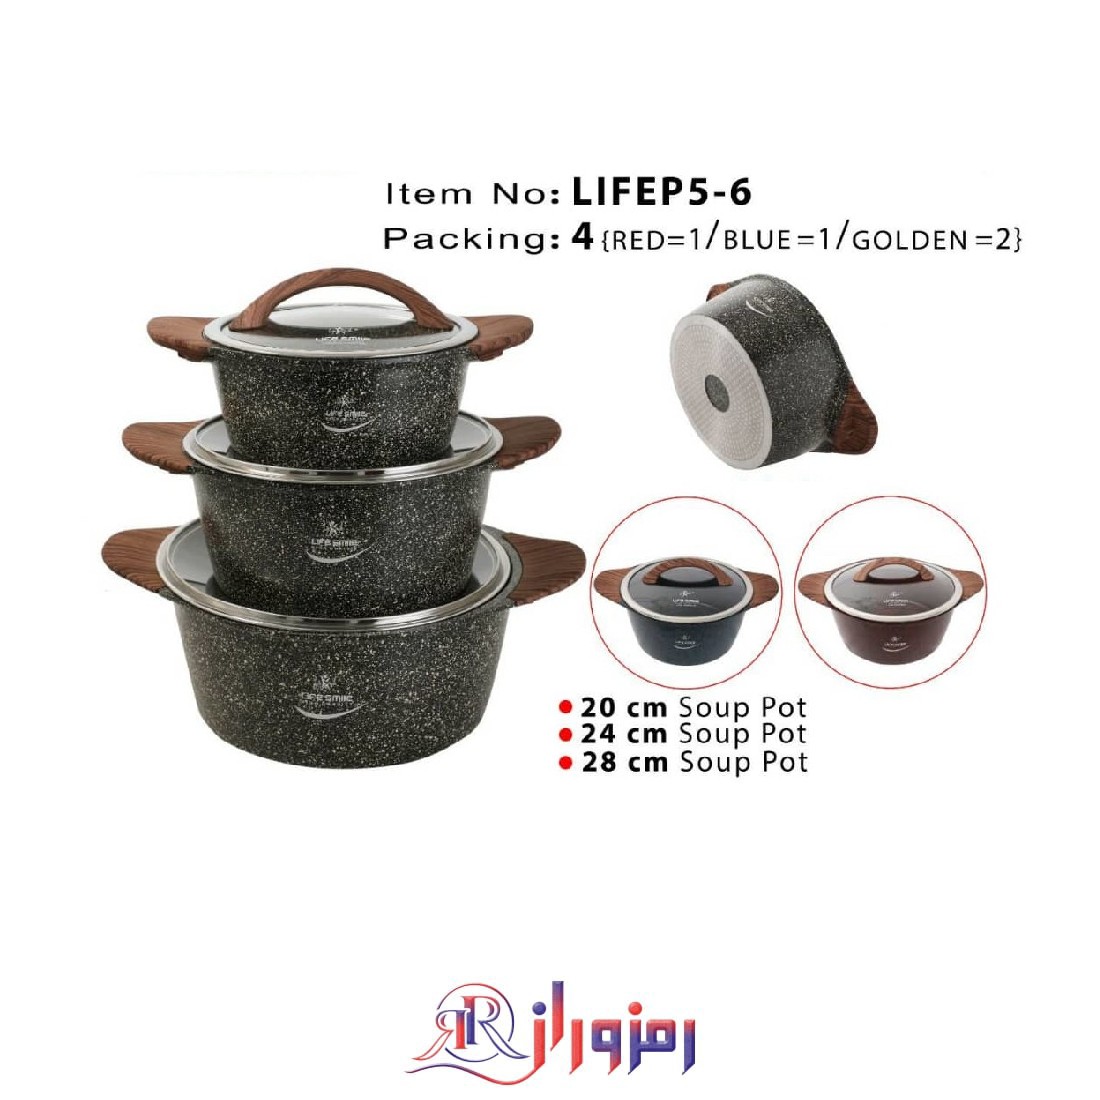 سرویس قابلمه 6 پارچه گرانیت لایف اسمایل مدل LIFEP5-6